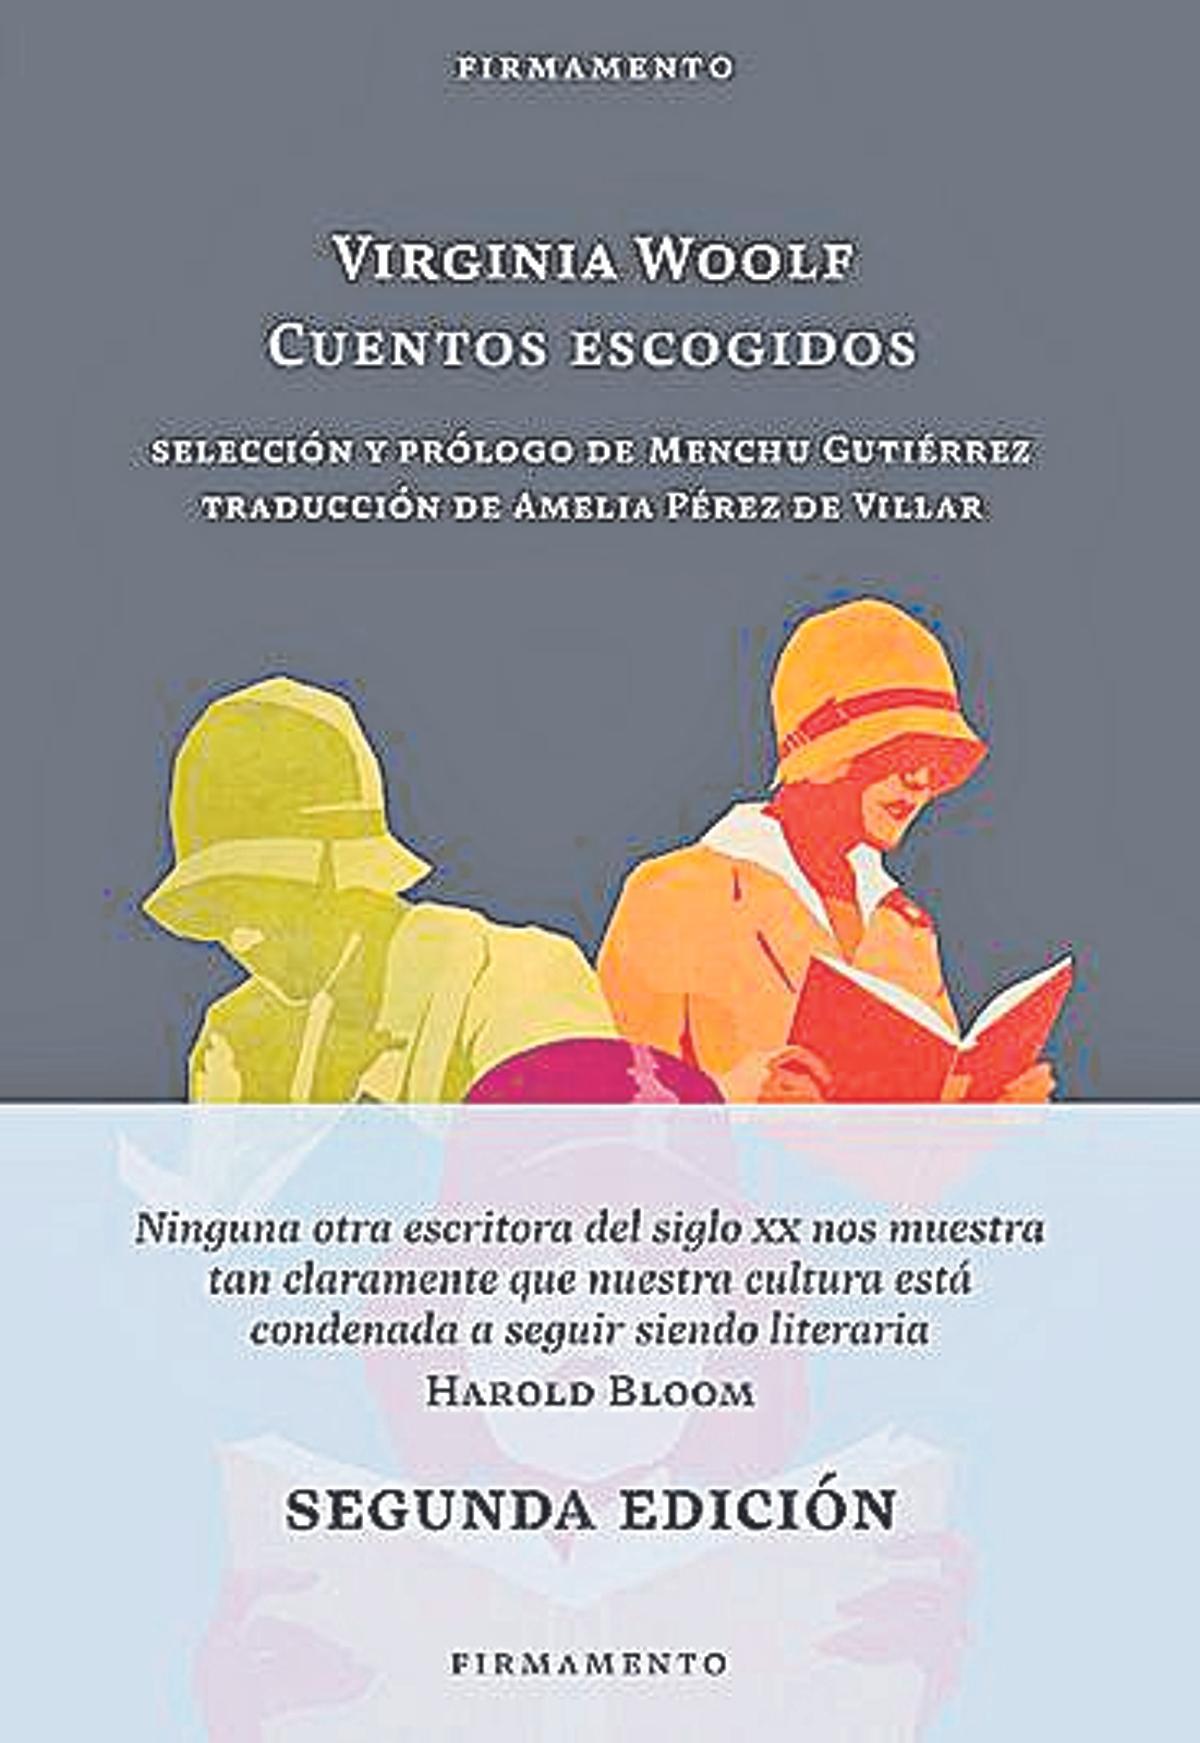 Virginia Woolf  Cuentos escogidos   Editorial Firmamento  Selección de Menchu Gutiérrez  Traducción de Amelia Pérez de Villar  23 euros